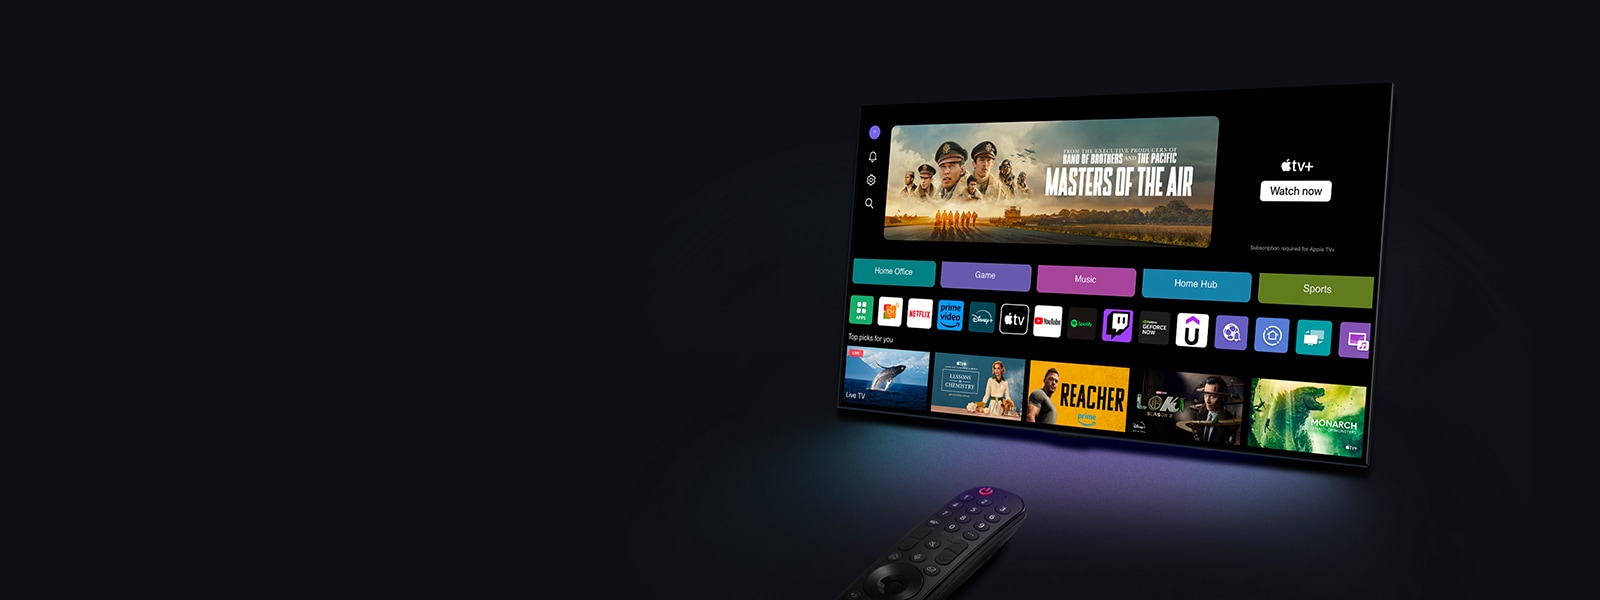 טלוויזיית LG TV שמציגה את מסך הבית של webOS עומדת בזווית על רקע. מסך הבית מציג קטגוריות גלישה ותמונות מתוכניות טלוויזיה. שלט הקסם של LG מצביע על הטלוויזיה.